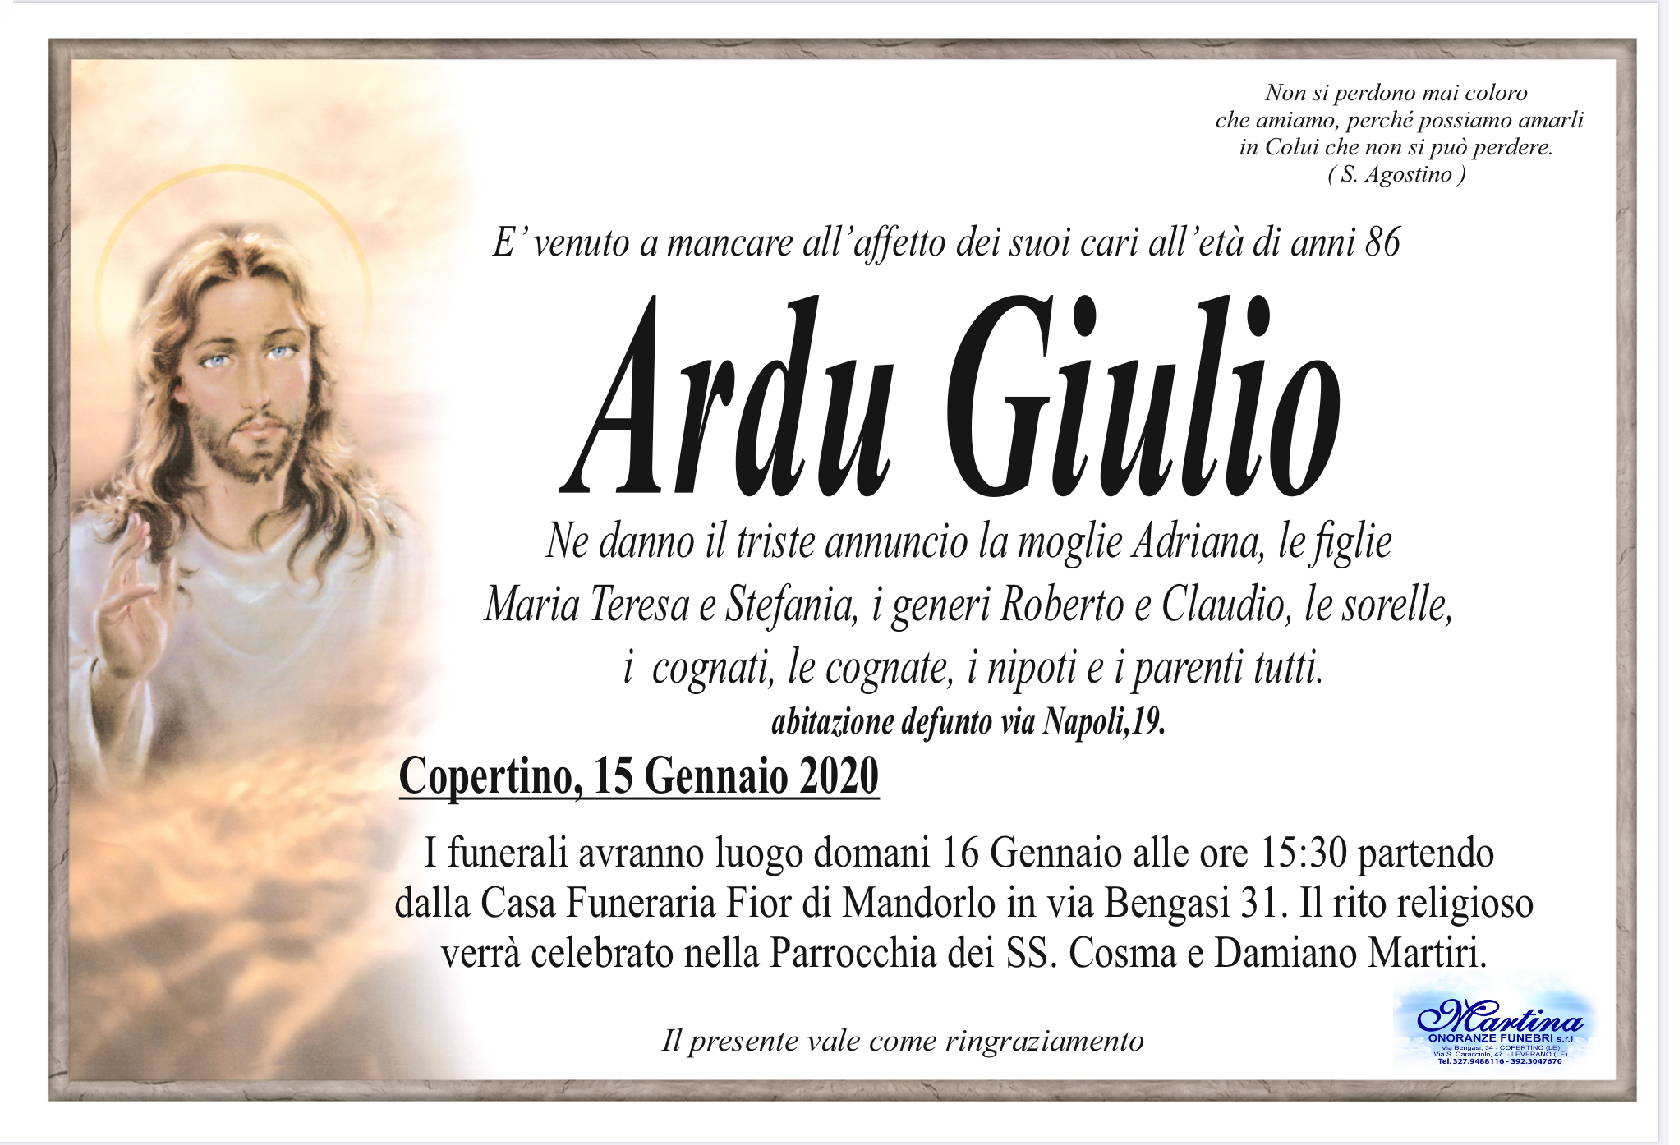 Giulio Ardu